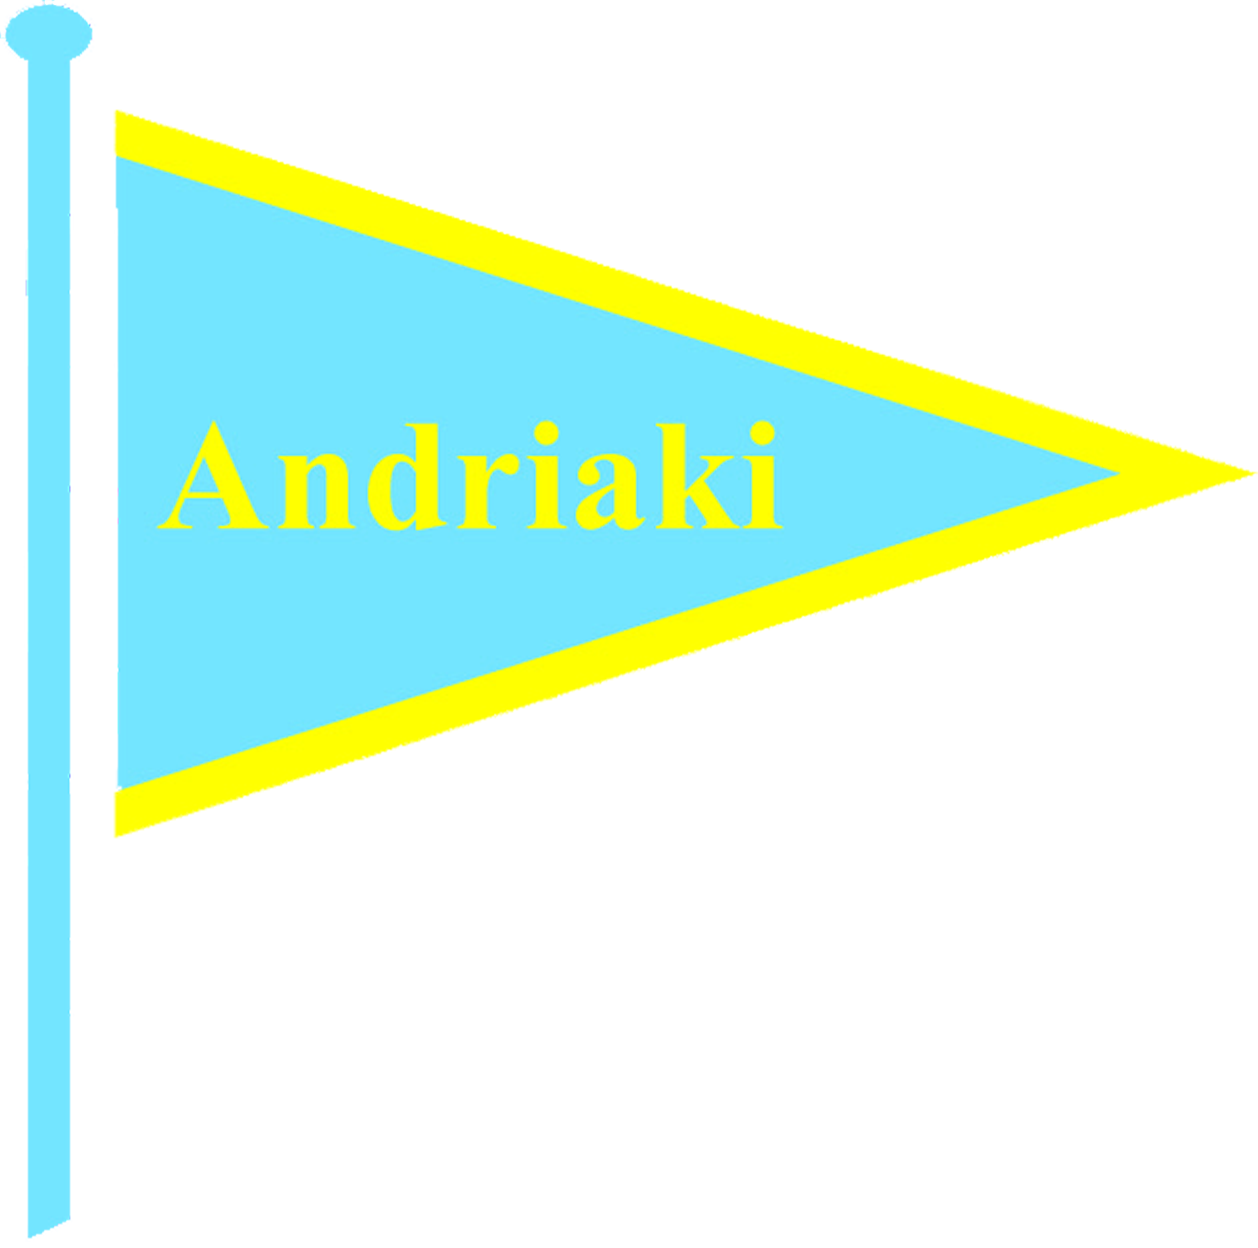 Andriaki-Transparent-logo